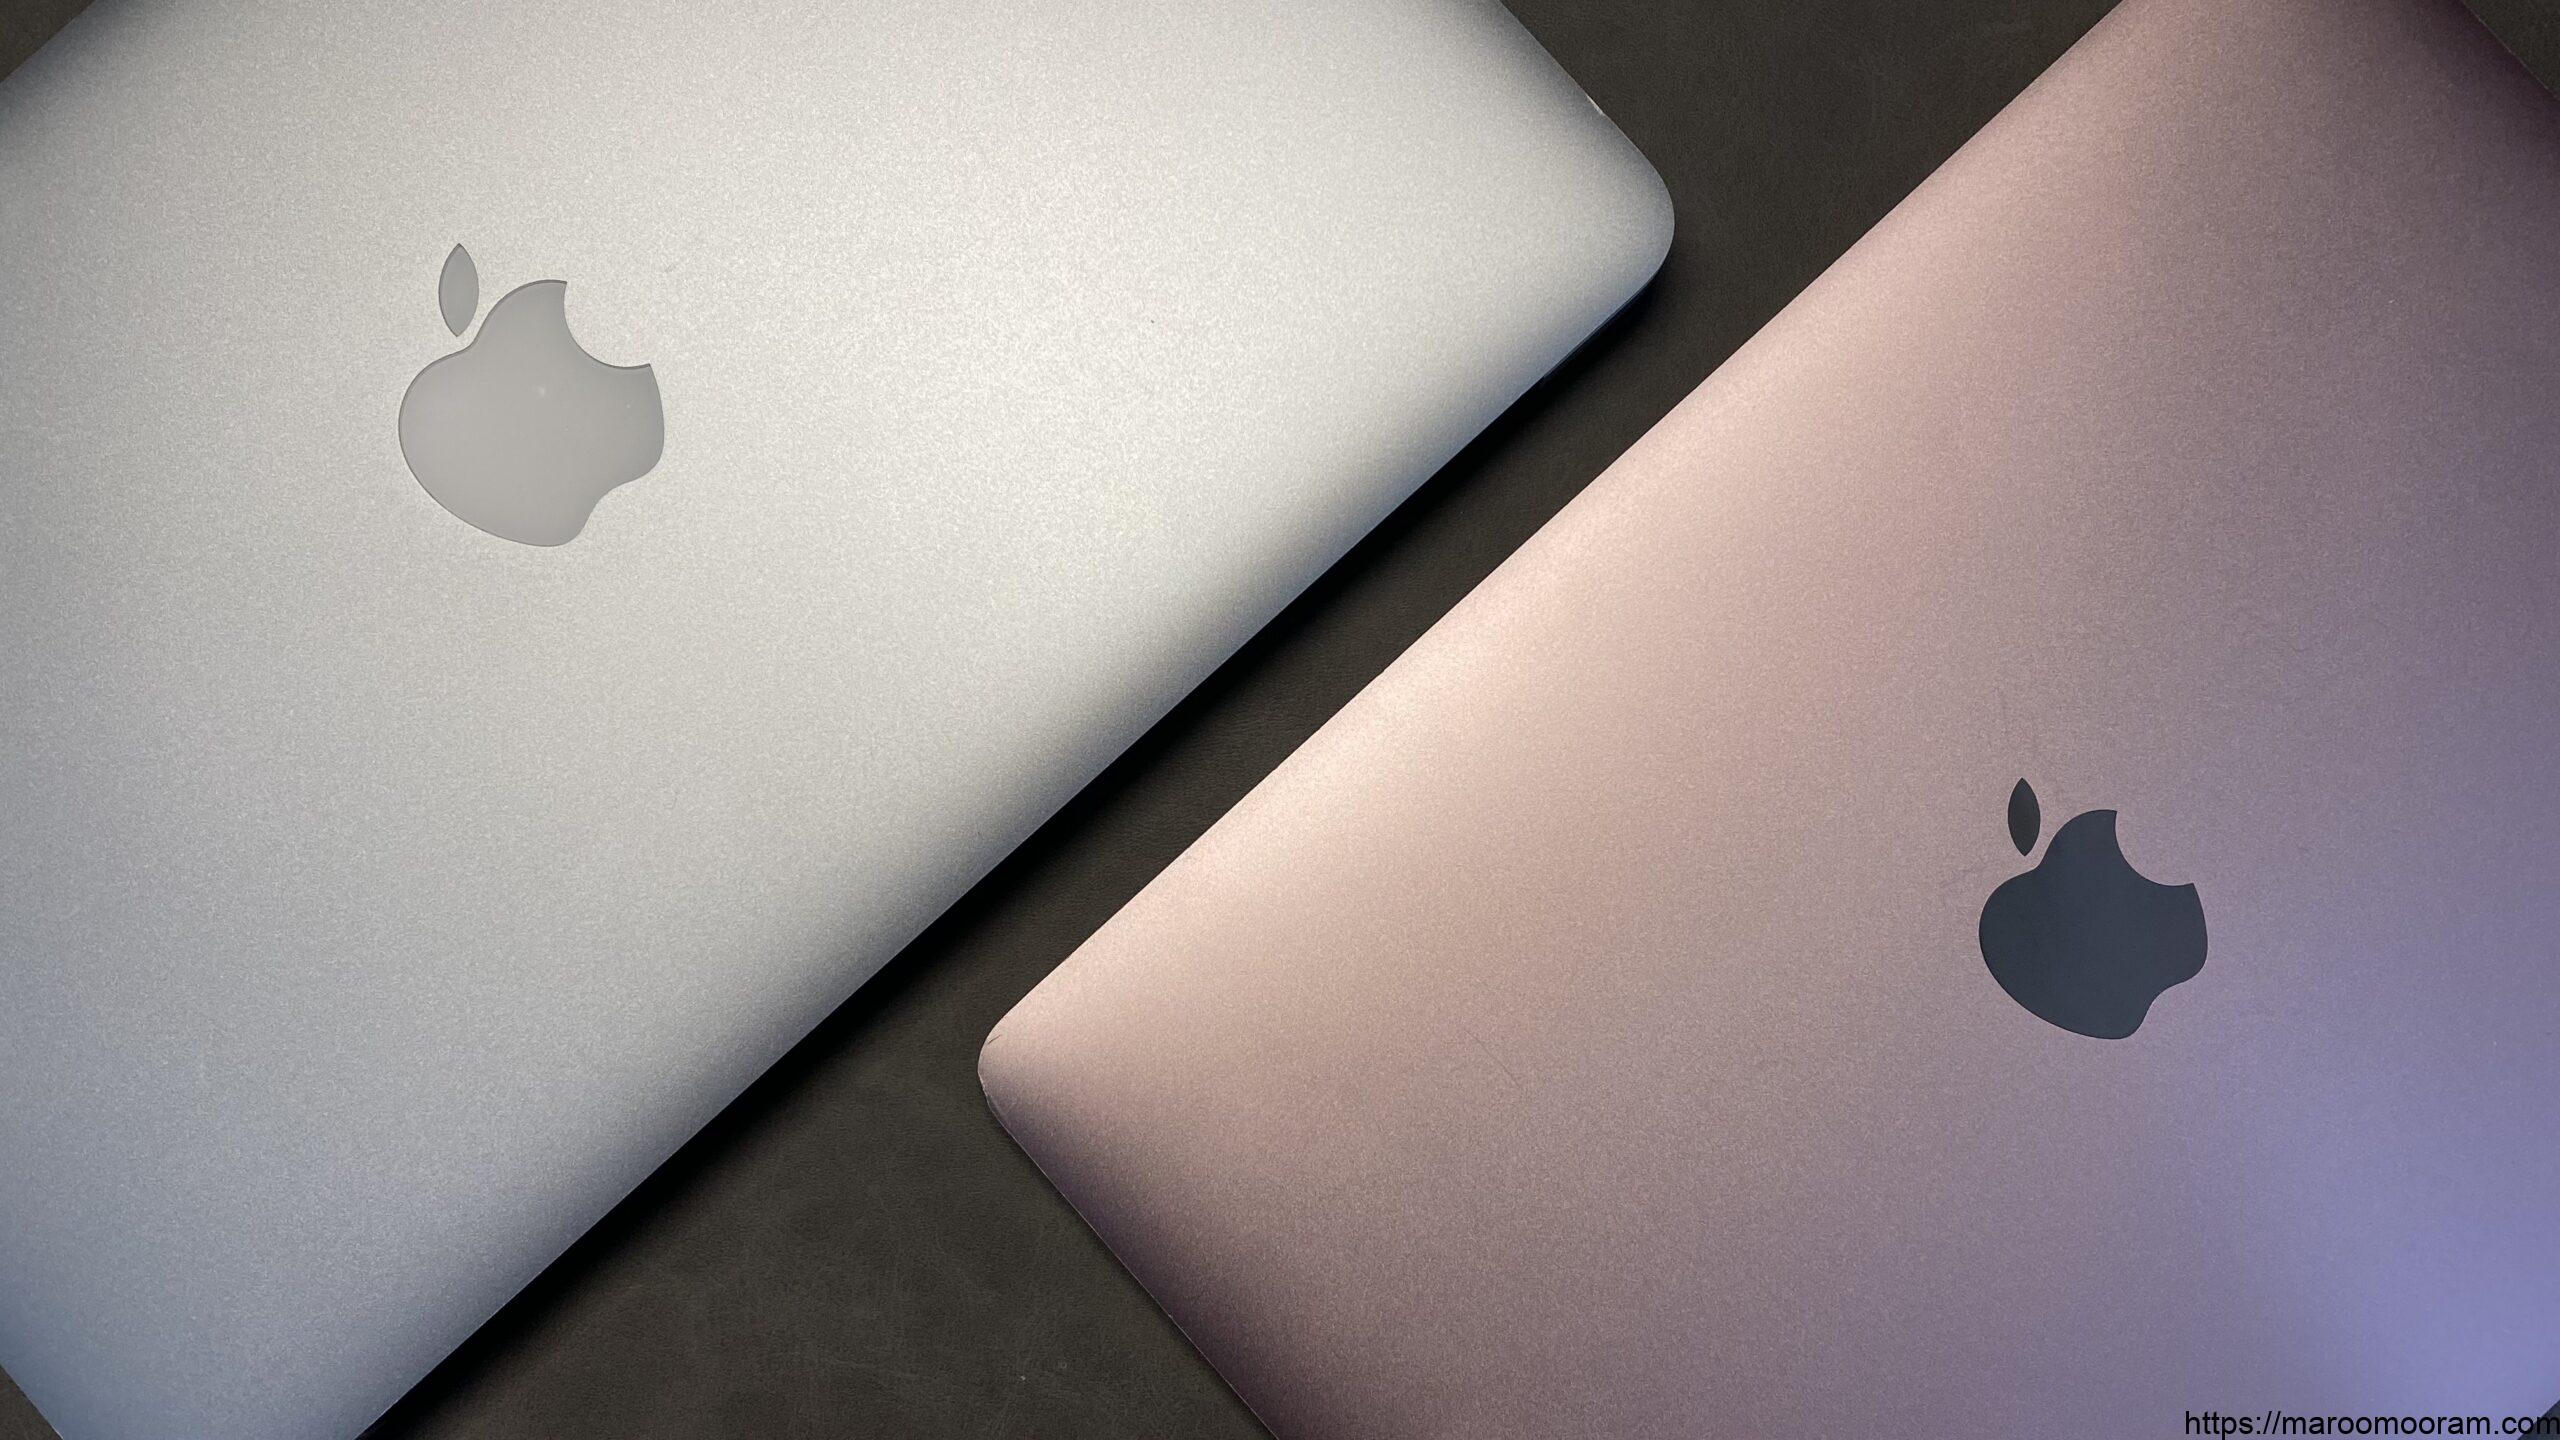 【専用】MacBookAir 11inch 2015 ハイスペック